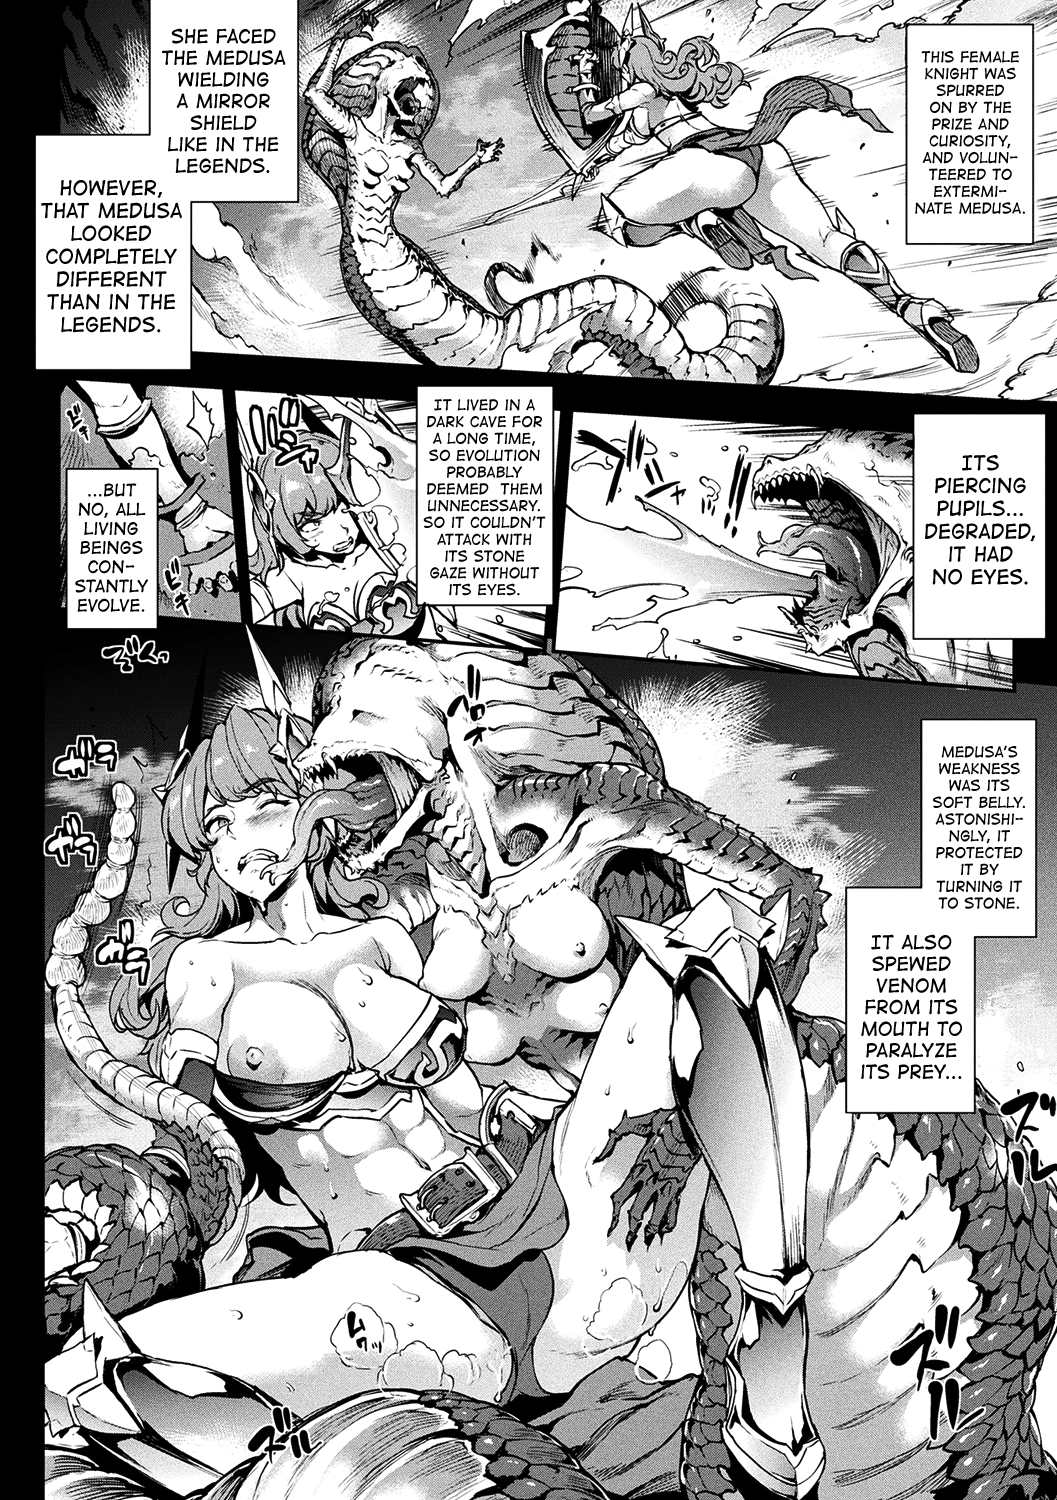 Raikou Shinki Igis Magia -Pandra Saga 3Rd Ignition - Page 2